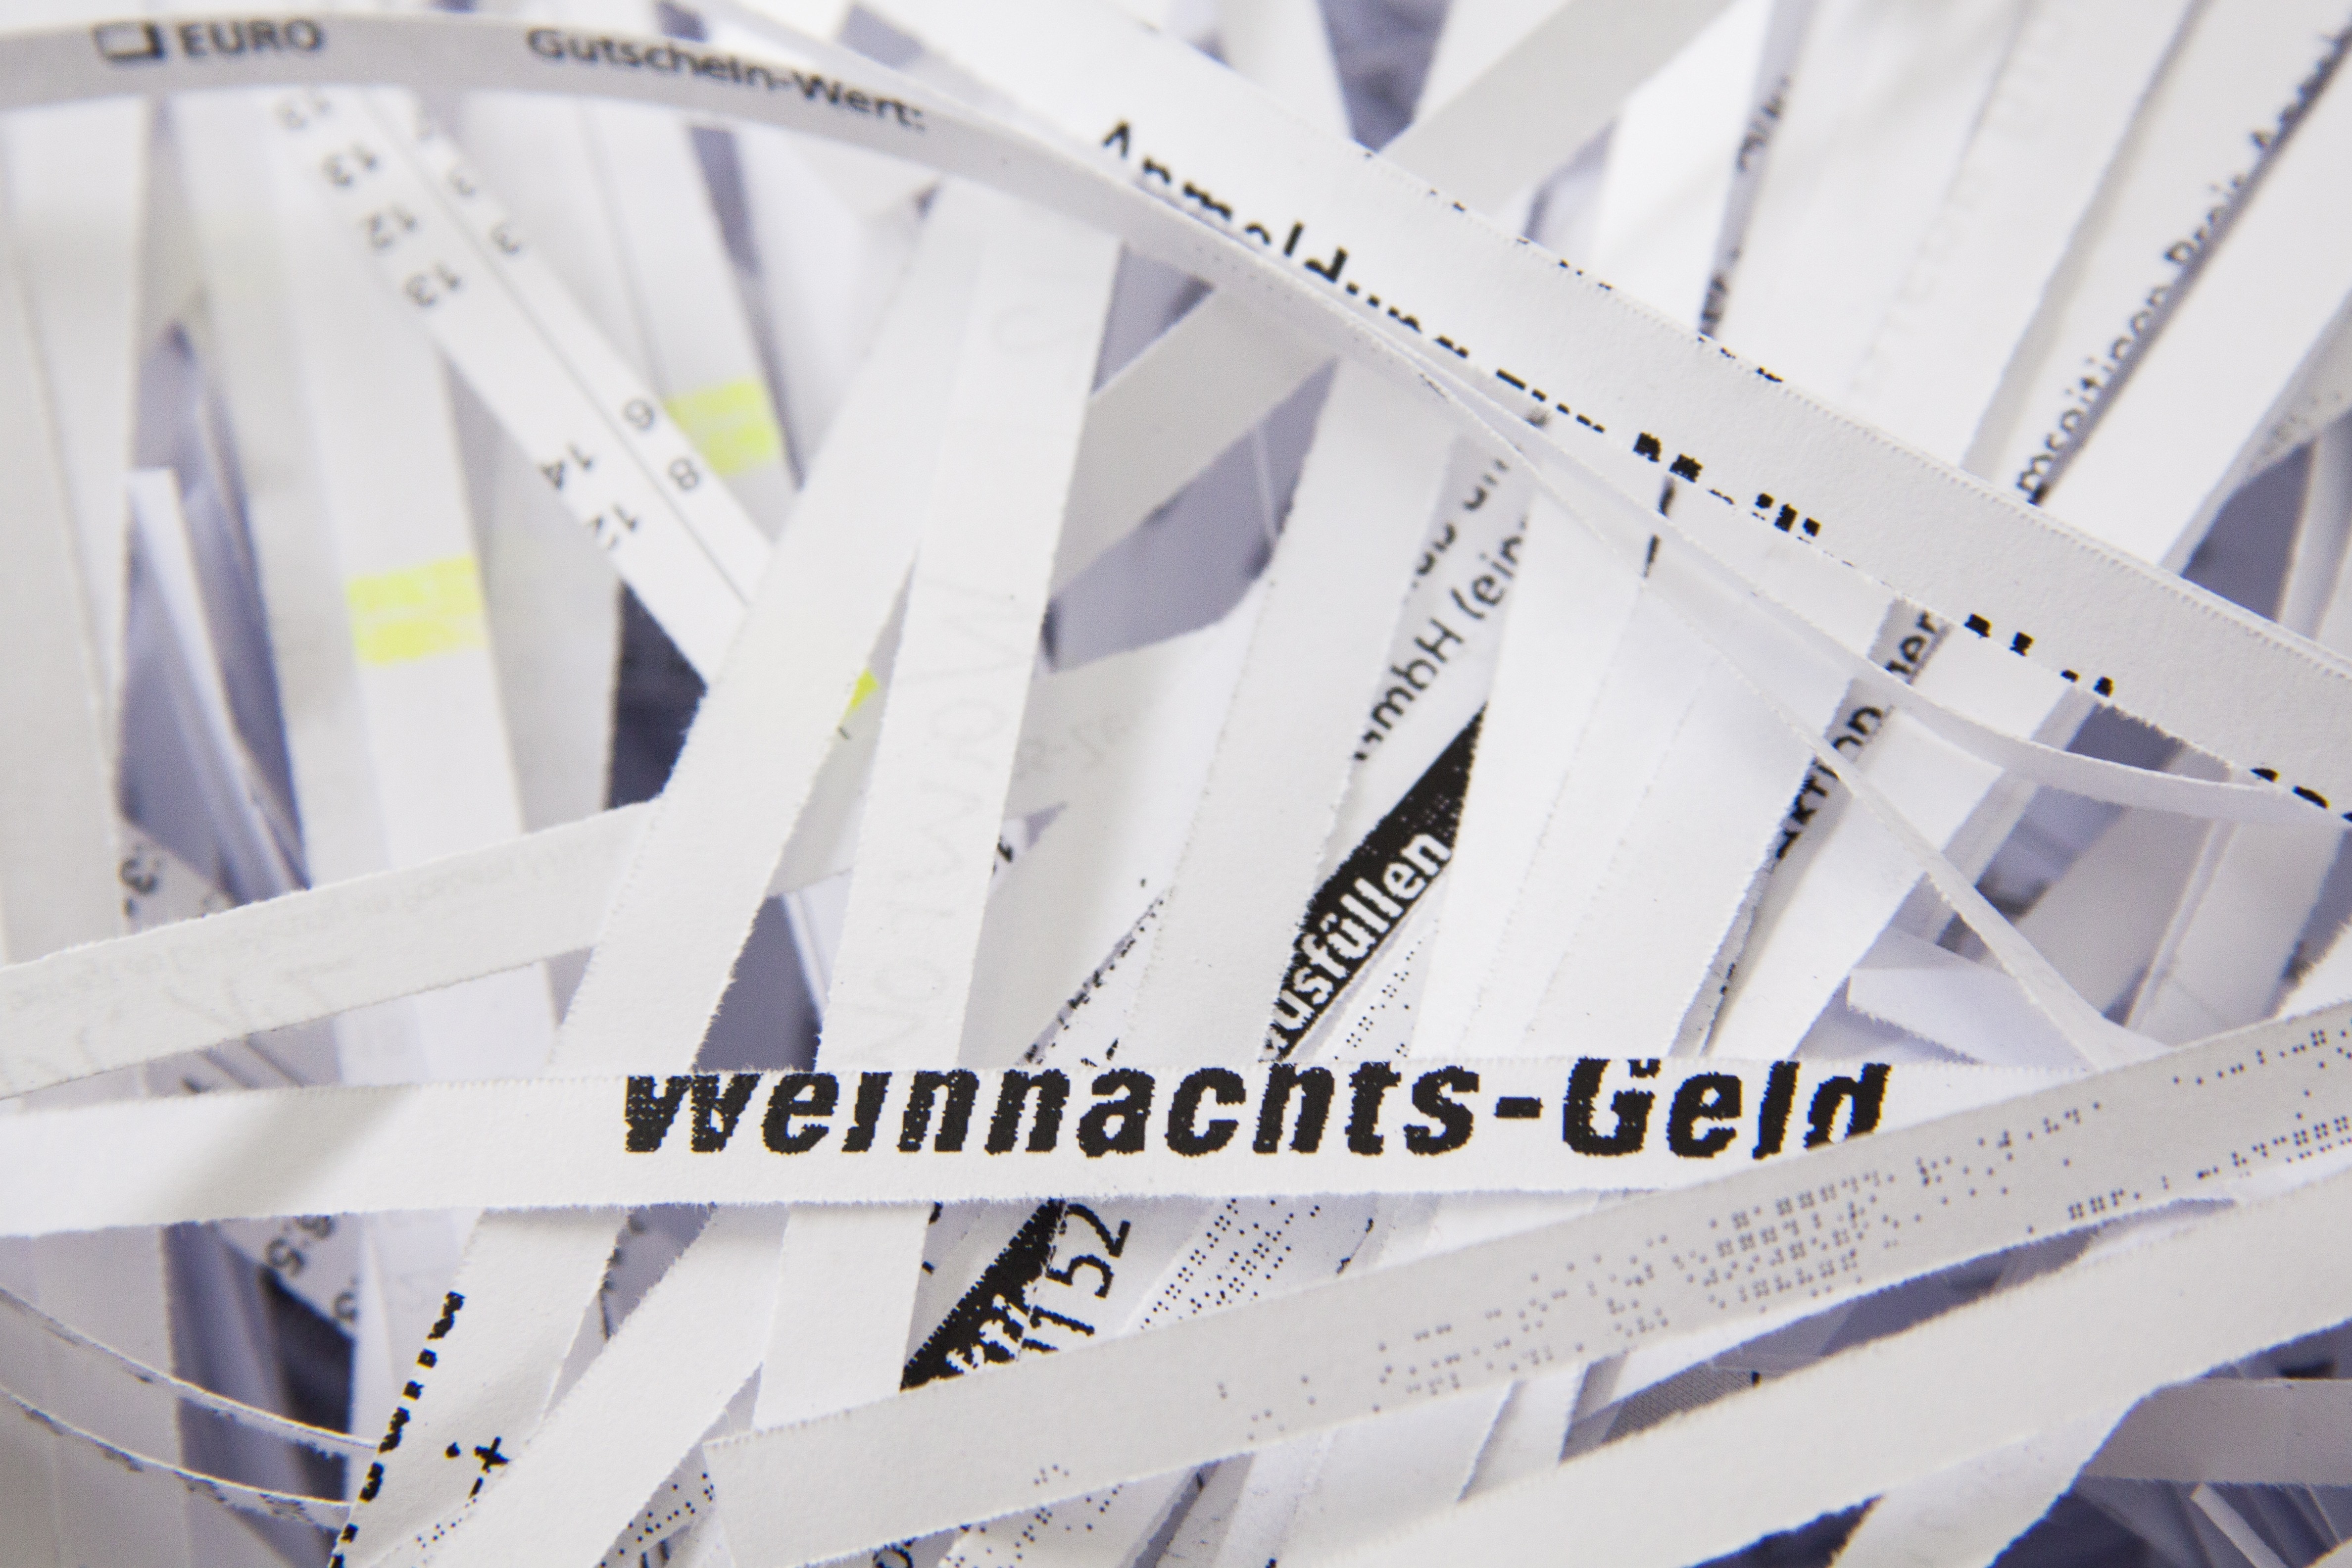 Weinnachts-Geld printed paper